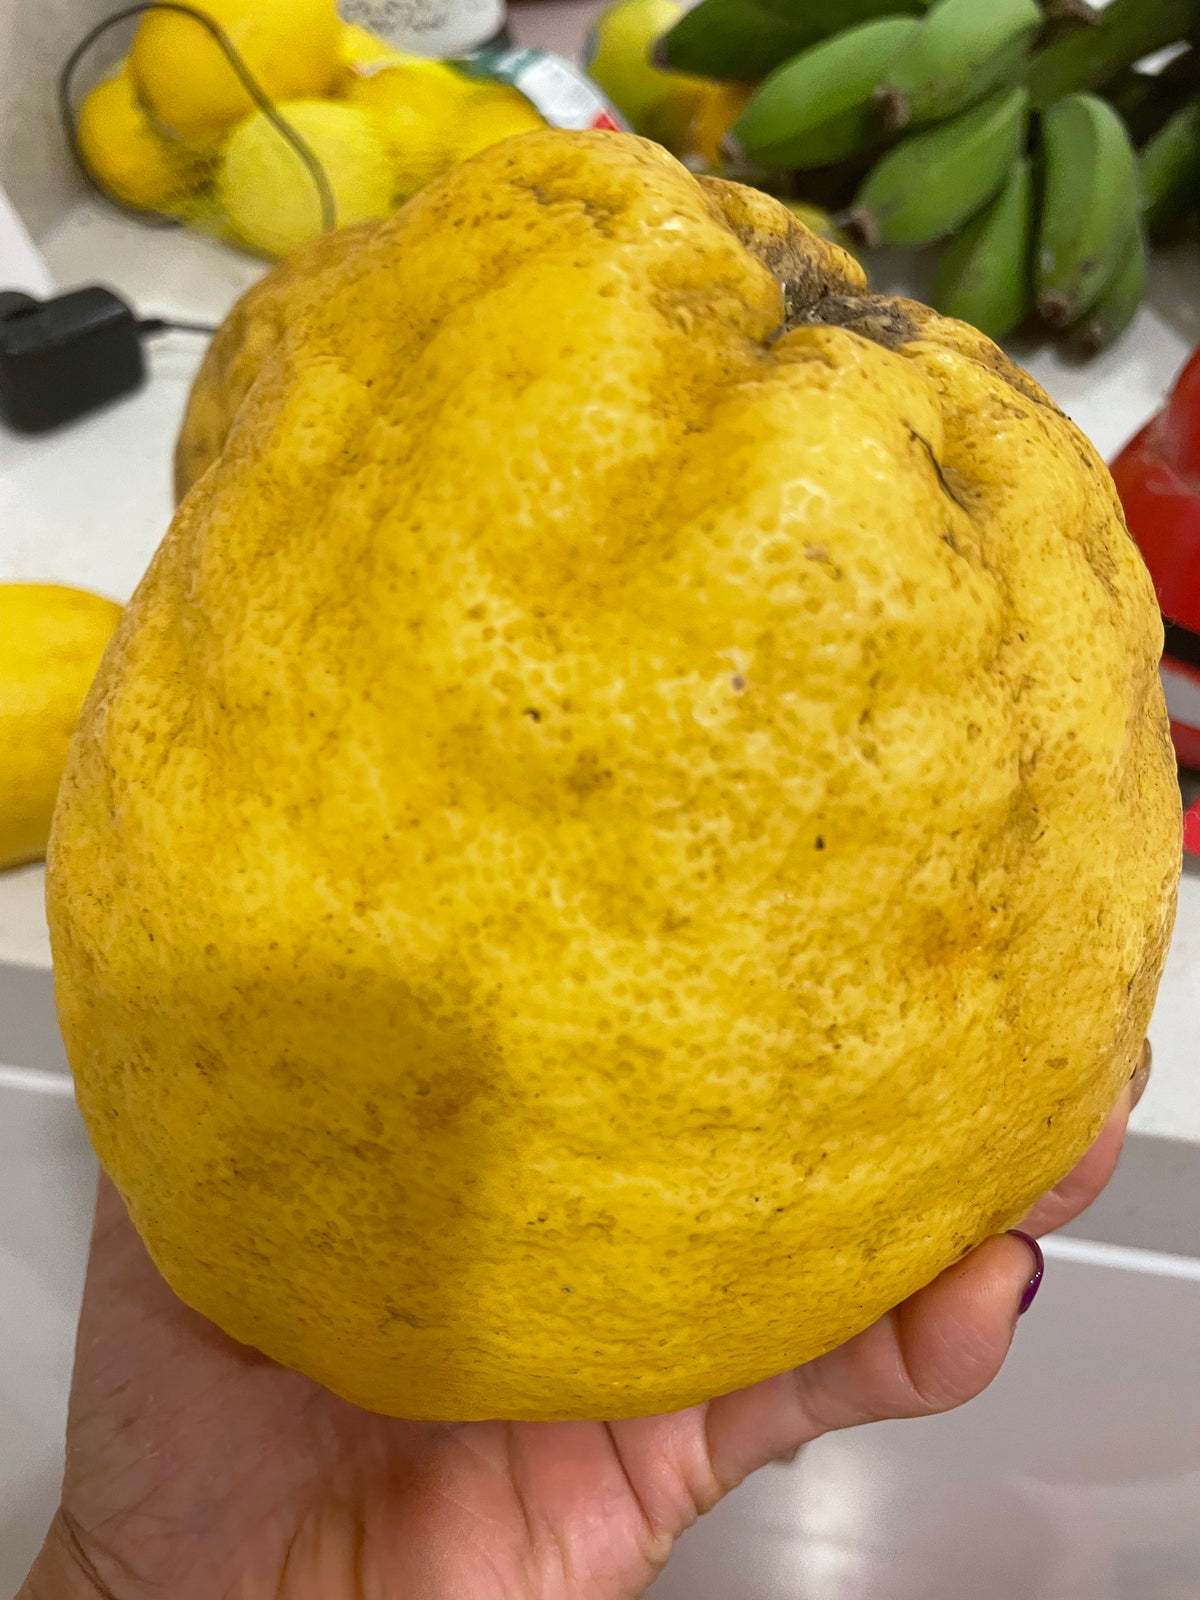 Ponderosa Giant Lemon Plant - A Citrus Marvel